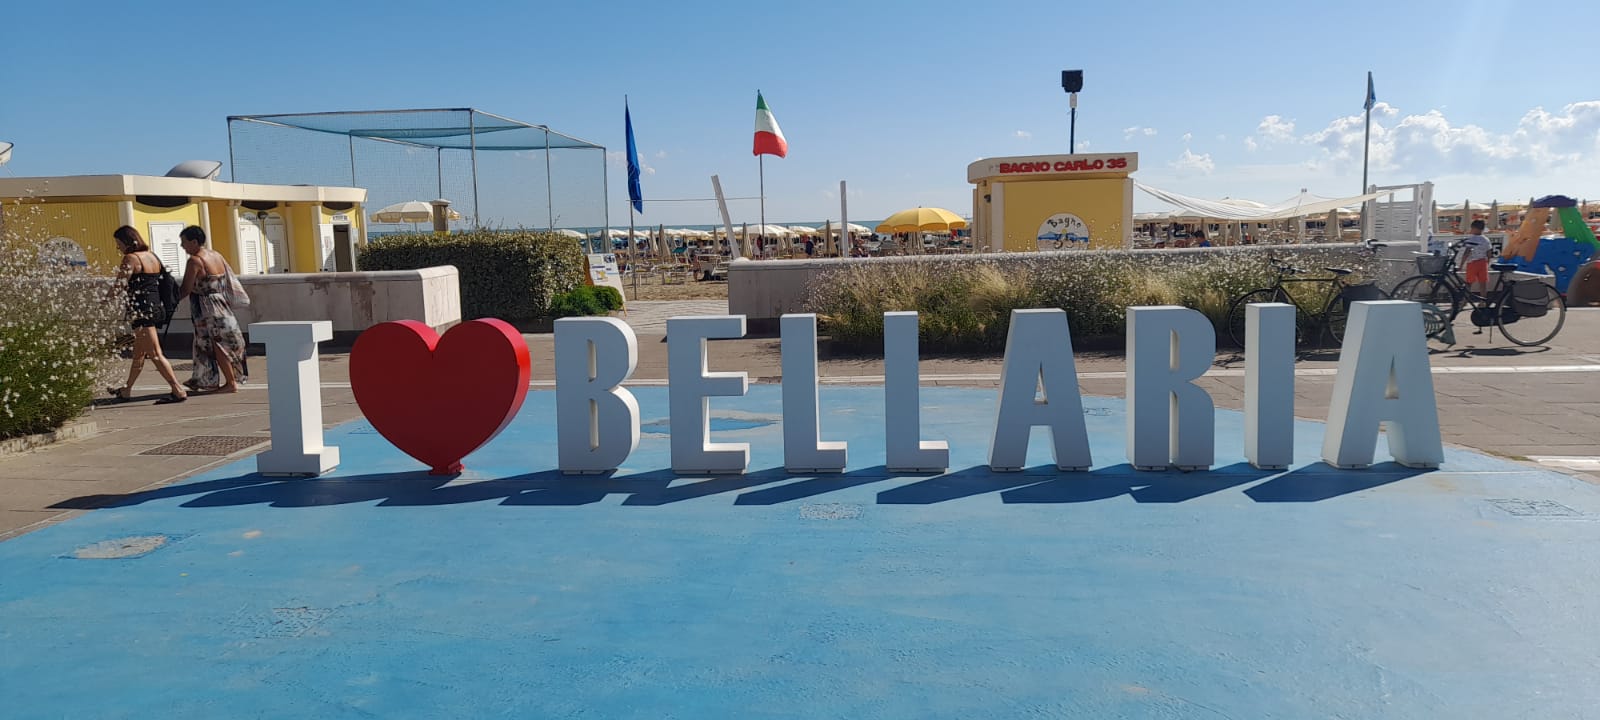 Bellaria_1